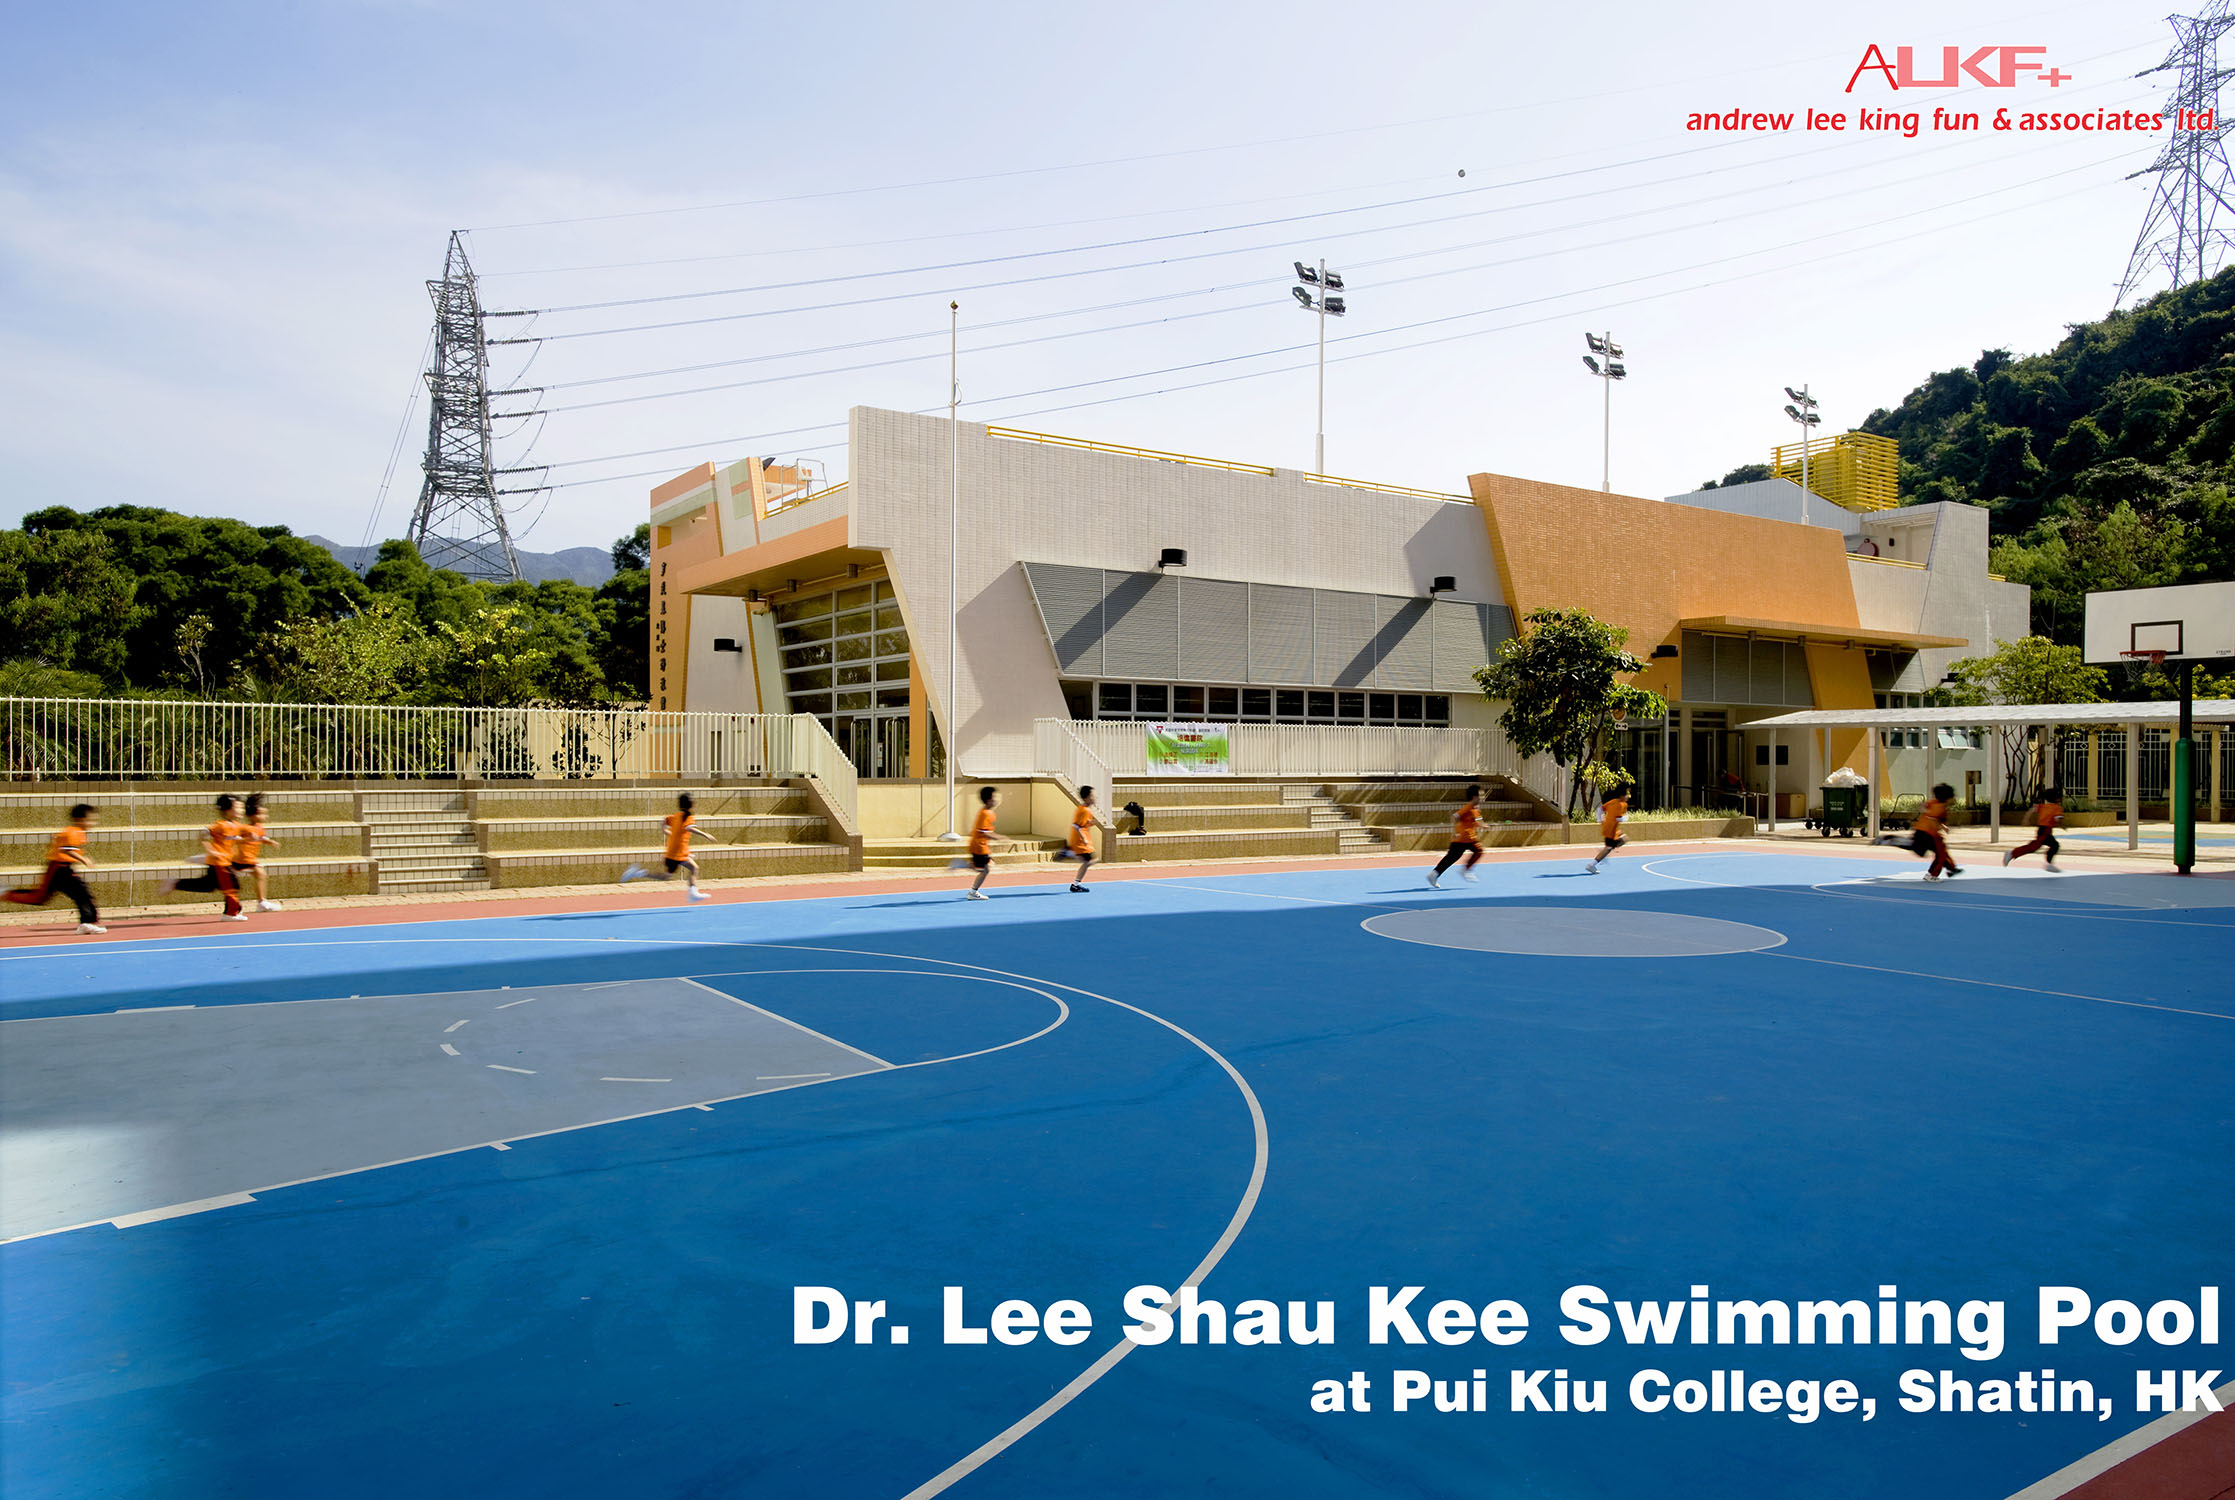 DR. LEE SHAU KEE SWIMMING POOL